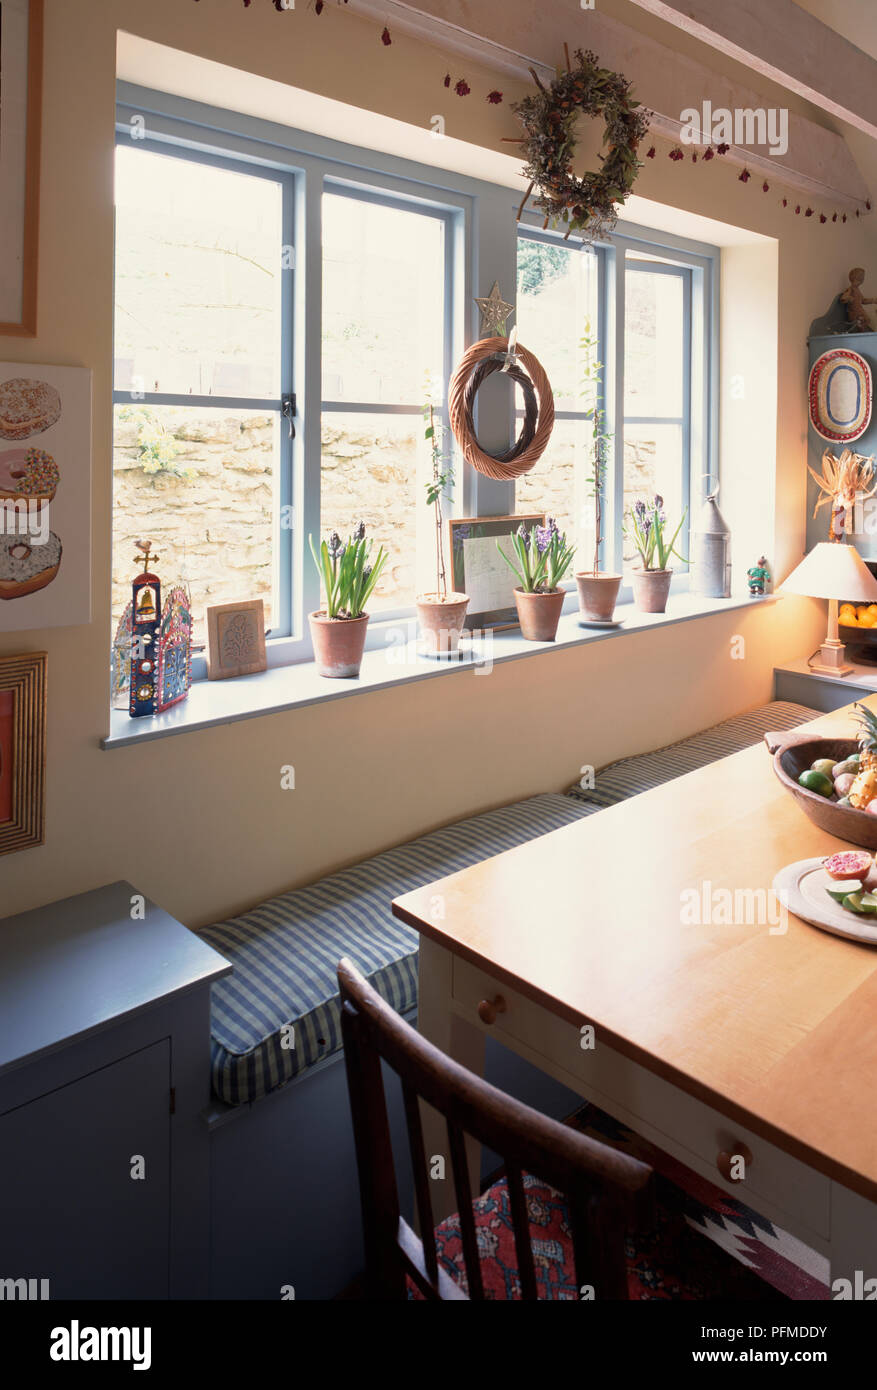 Cucina grande finestra, vasi di fiori fodera davanzale, due corone appeso sopra la finestra del banco, di seguito, lungo tavolo di legno. Foto Stock